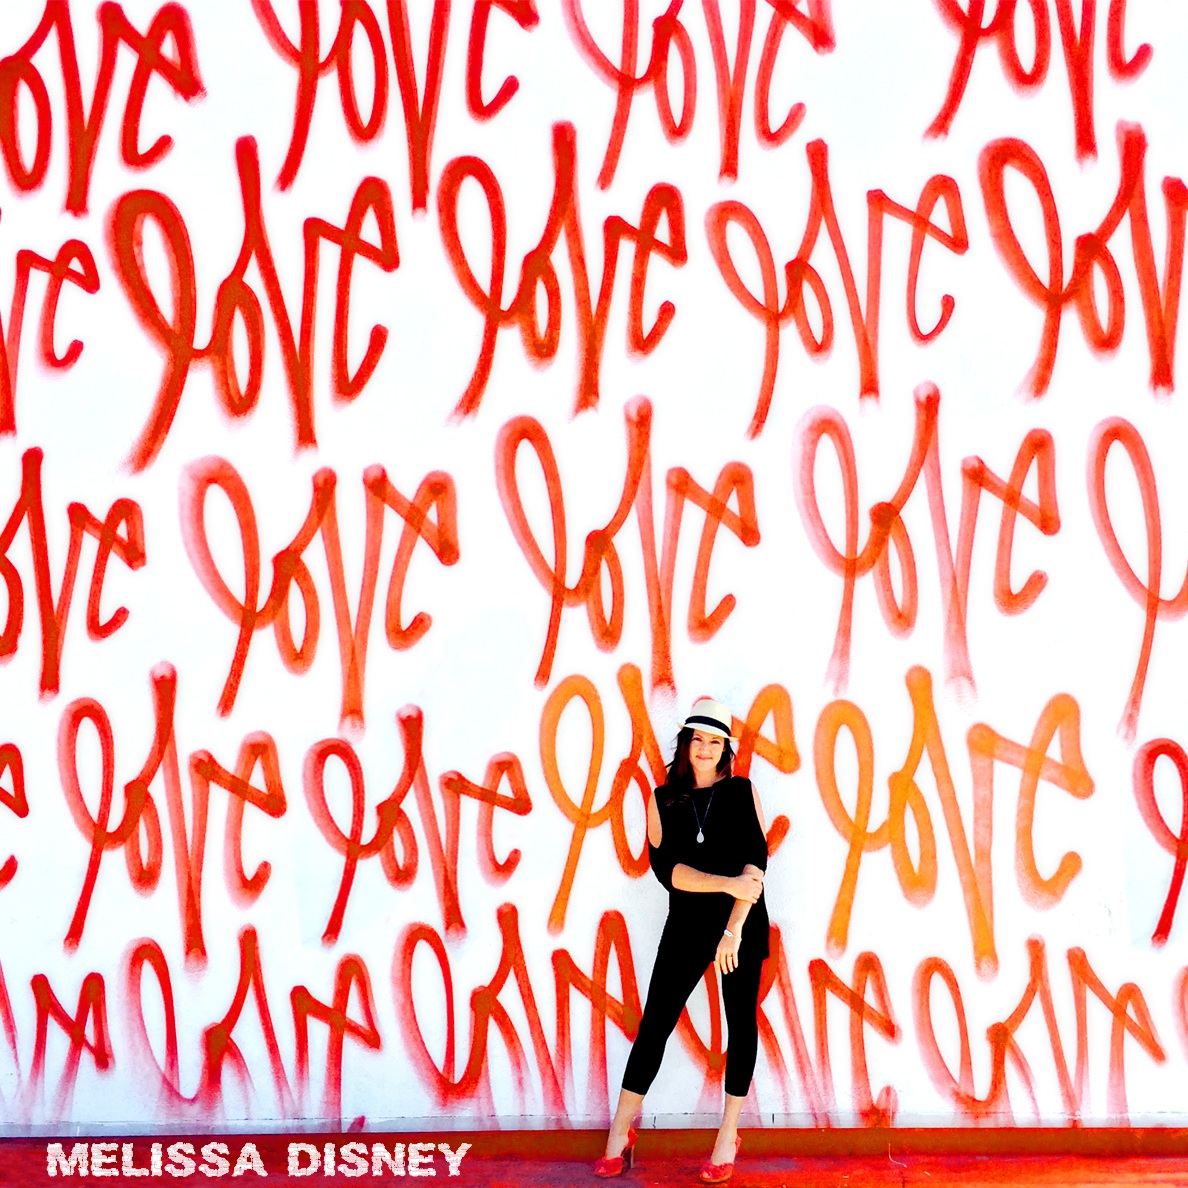 LOVE - Cover Art for new album -MELISSA DISNEY.jpg